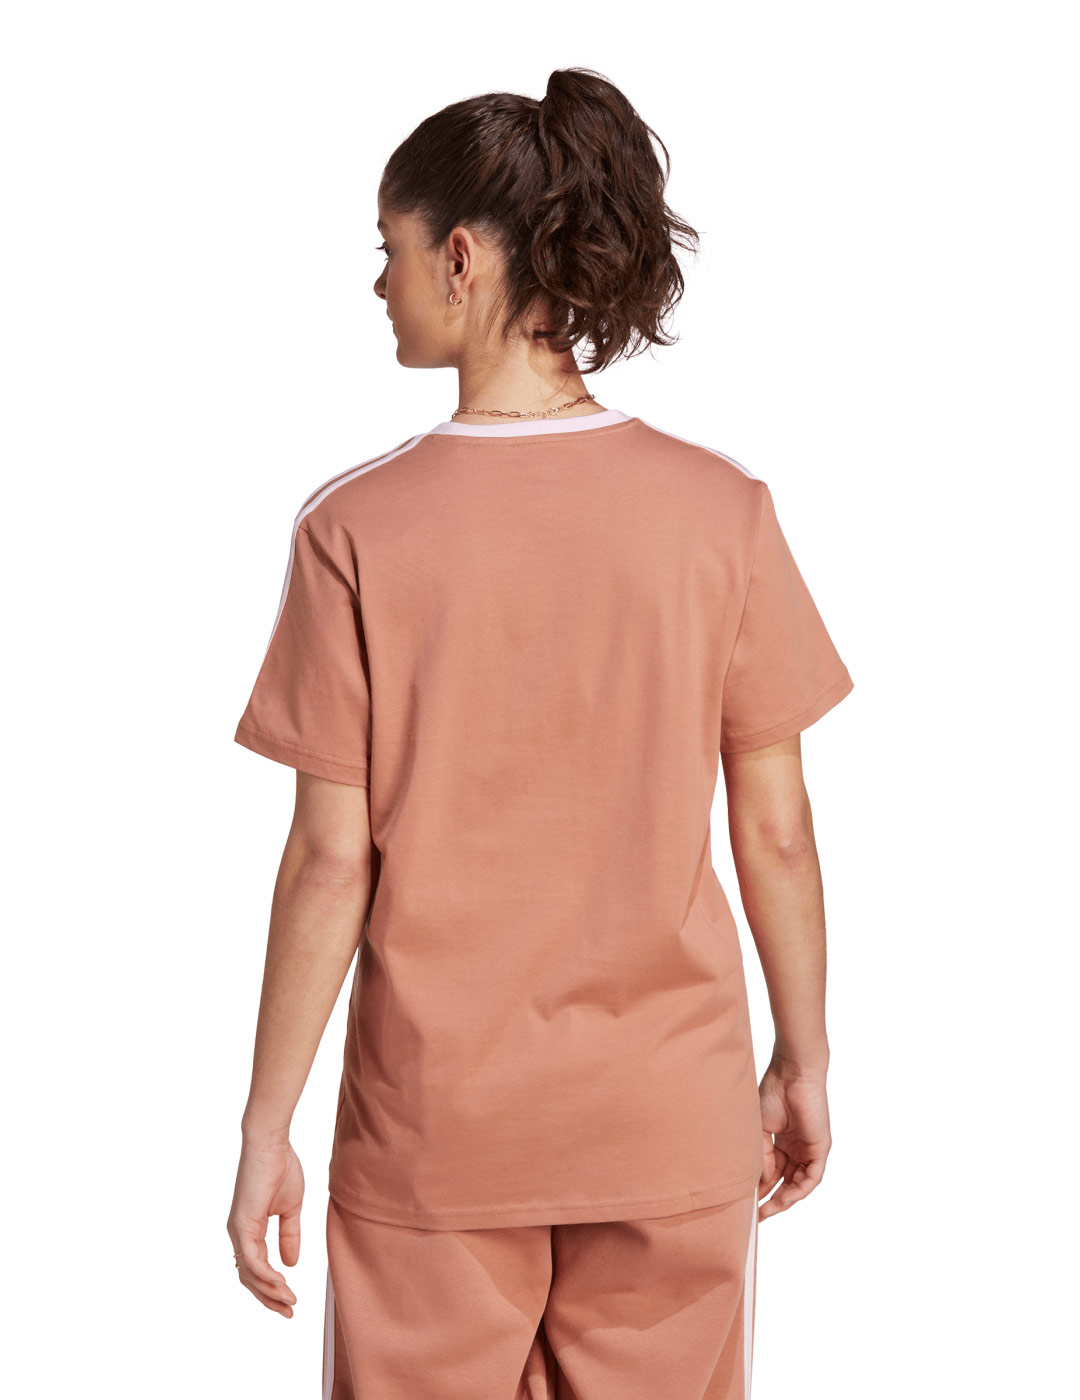 camiseta adidas mujer manga corta classic. cobre/rosa